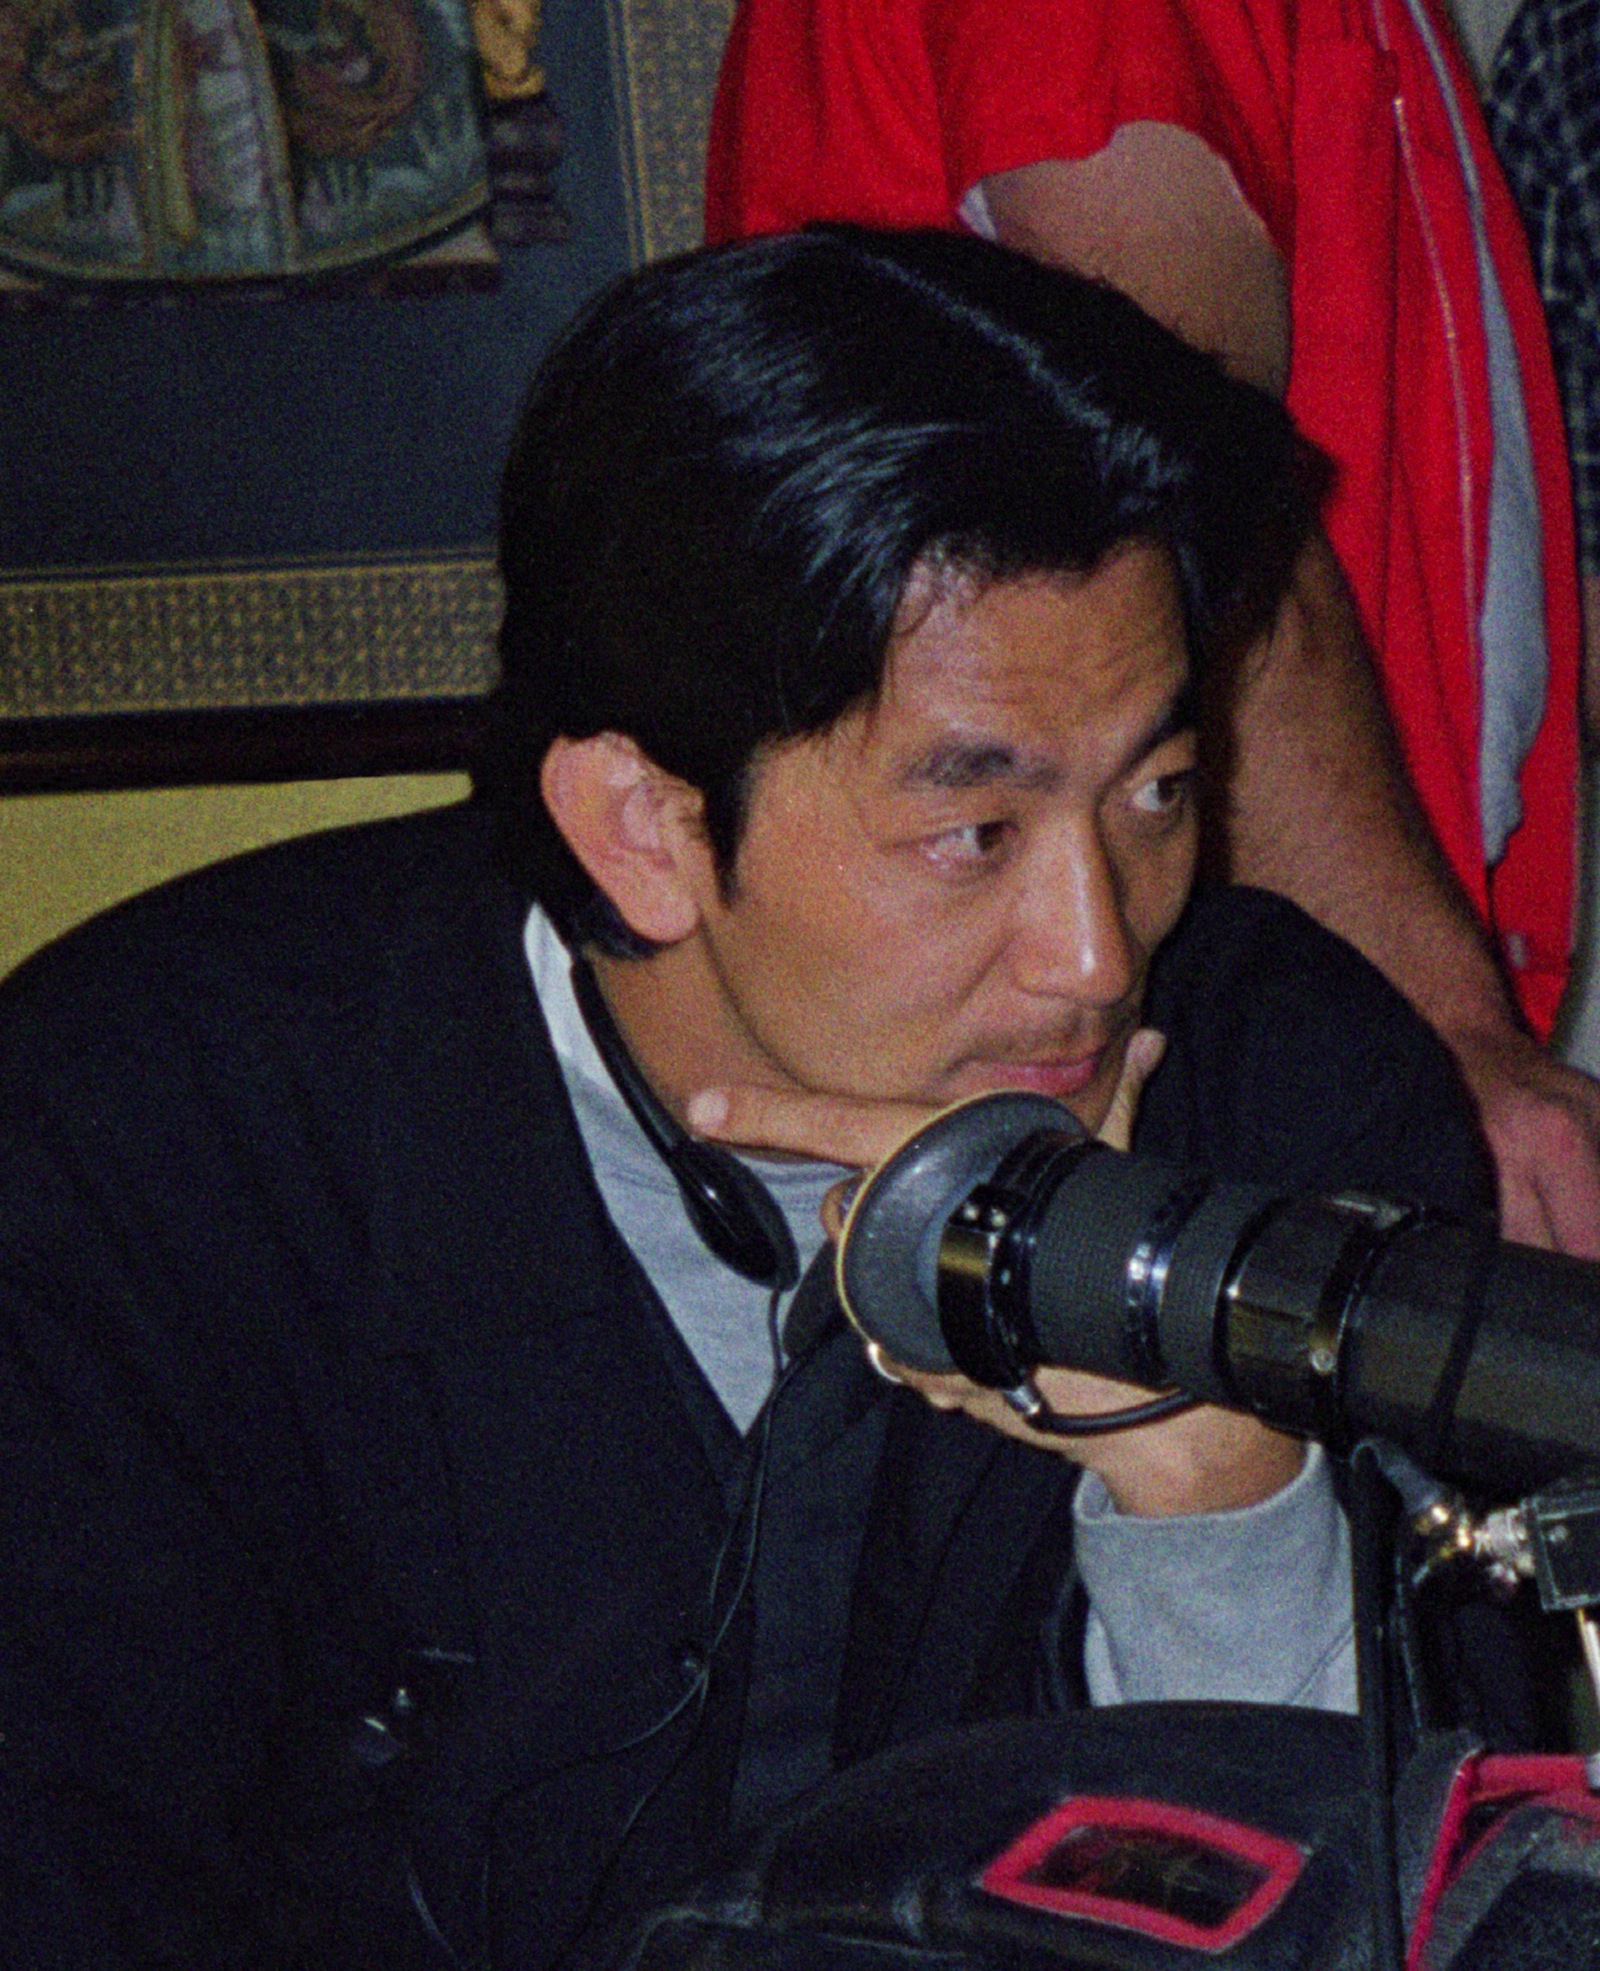 Director Masashi Nagadoi